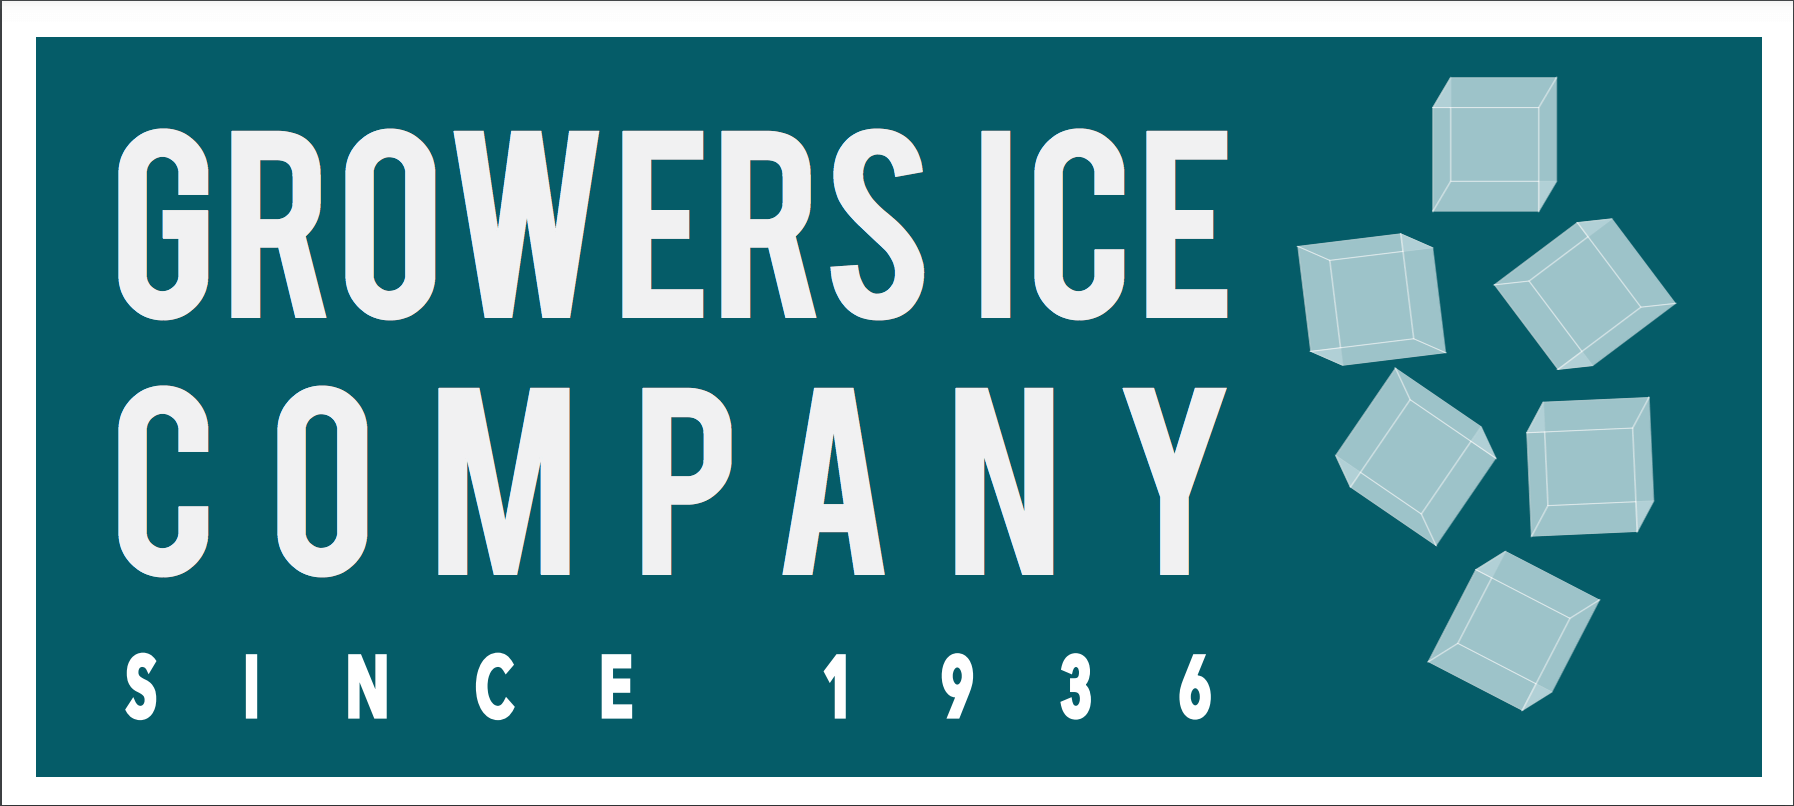 Growers Ice